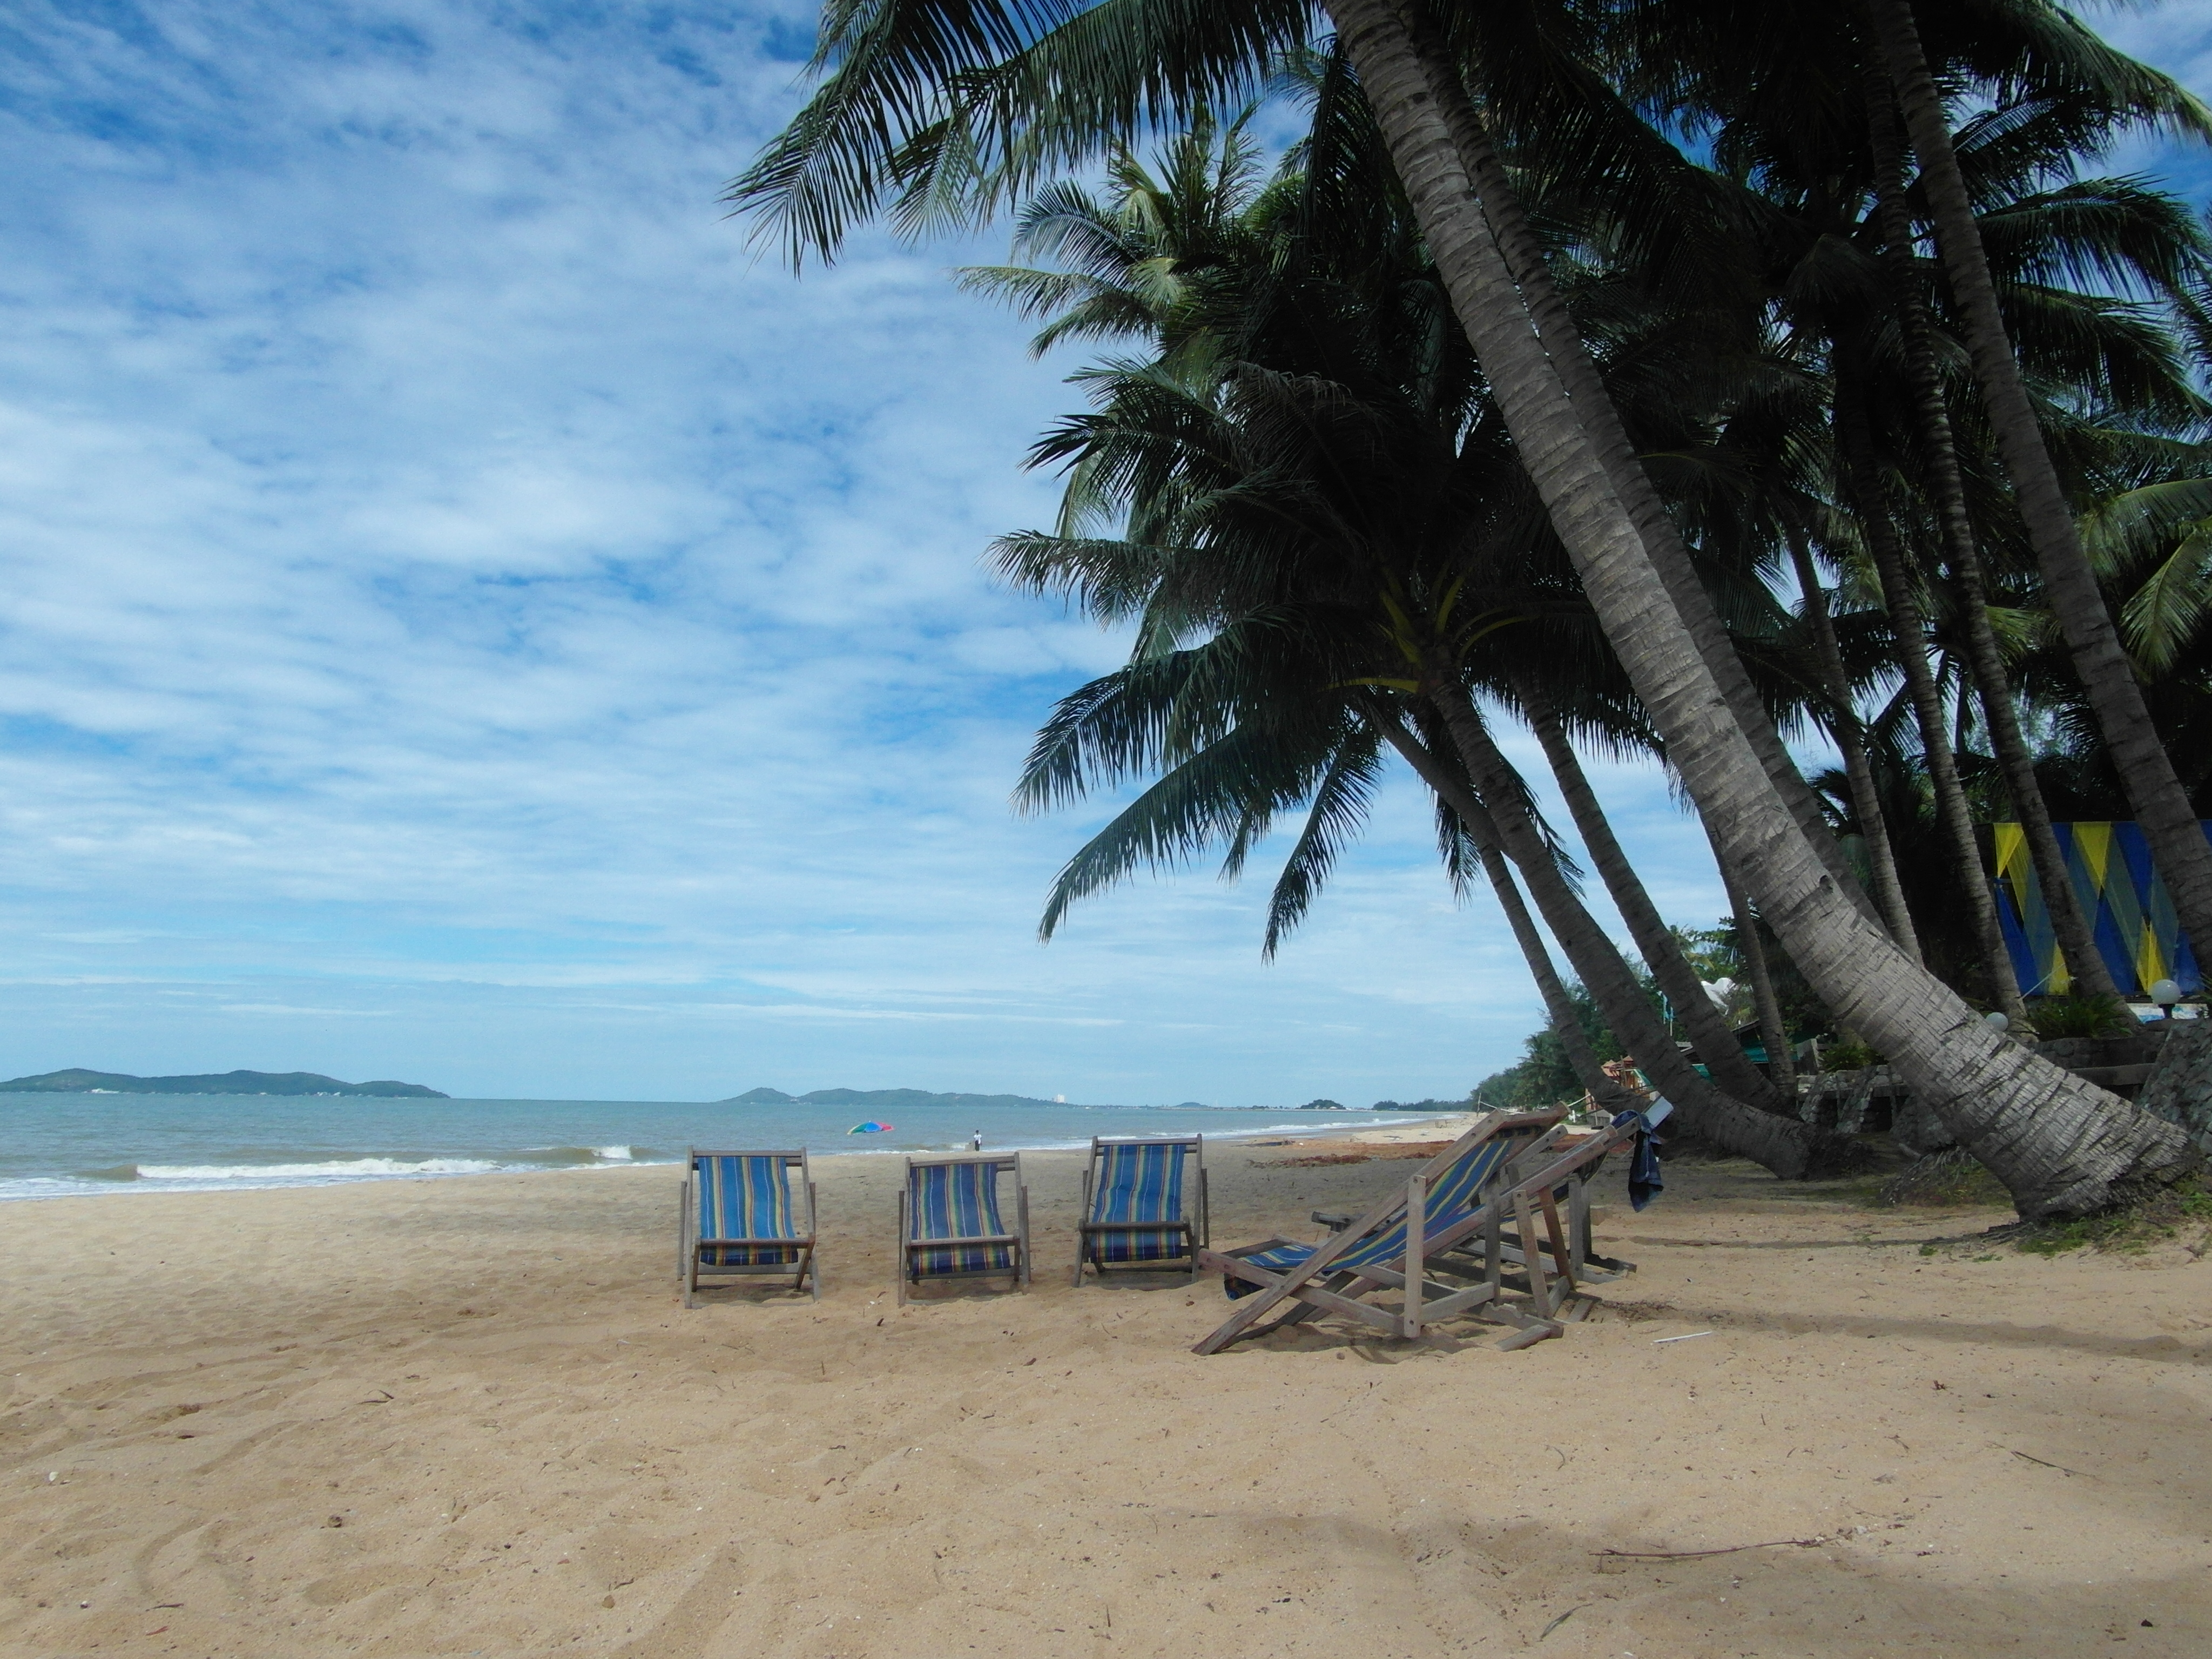 Deckchairs on a Tropical Beach, Alone, Palm, Tropical, Trees, HQ Photo